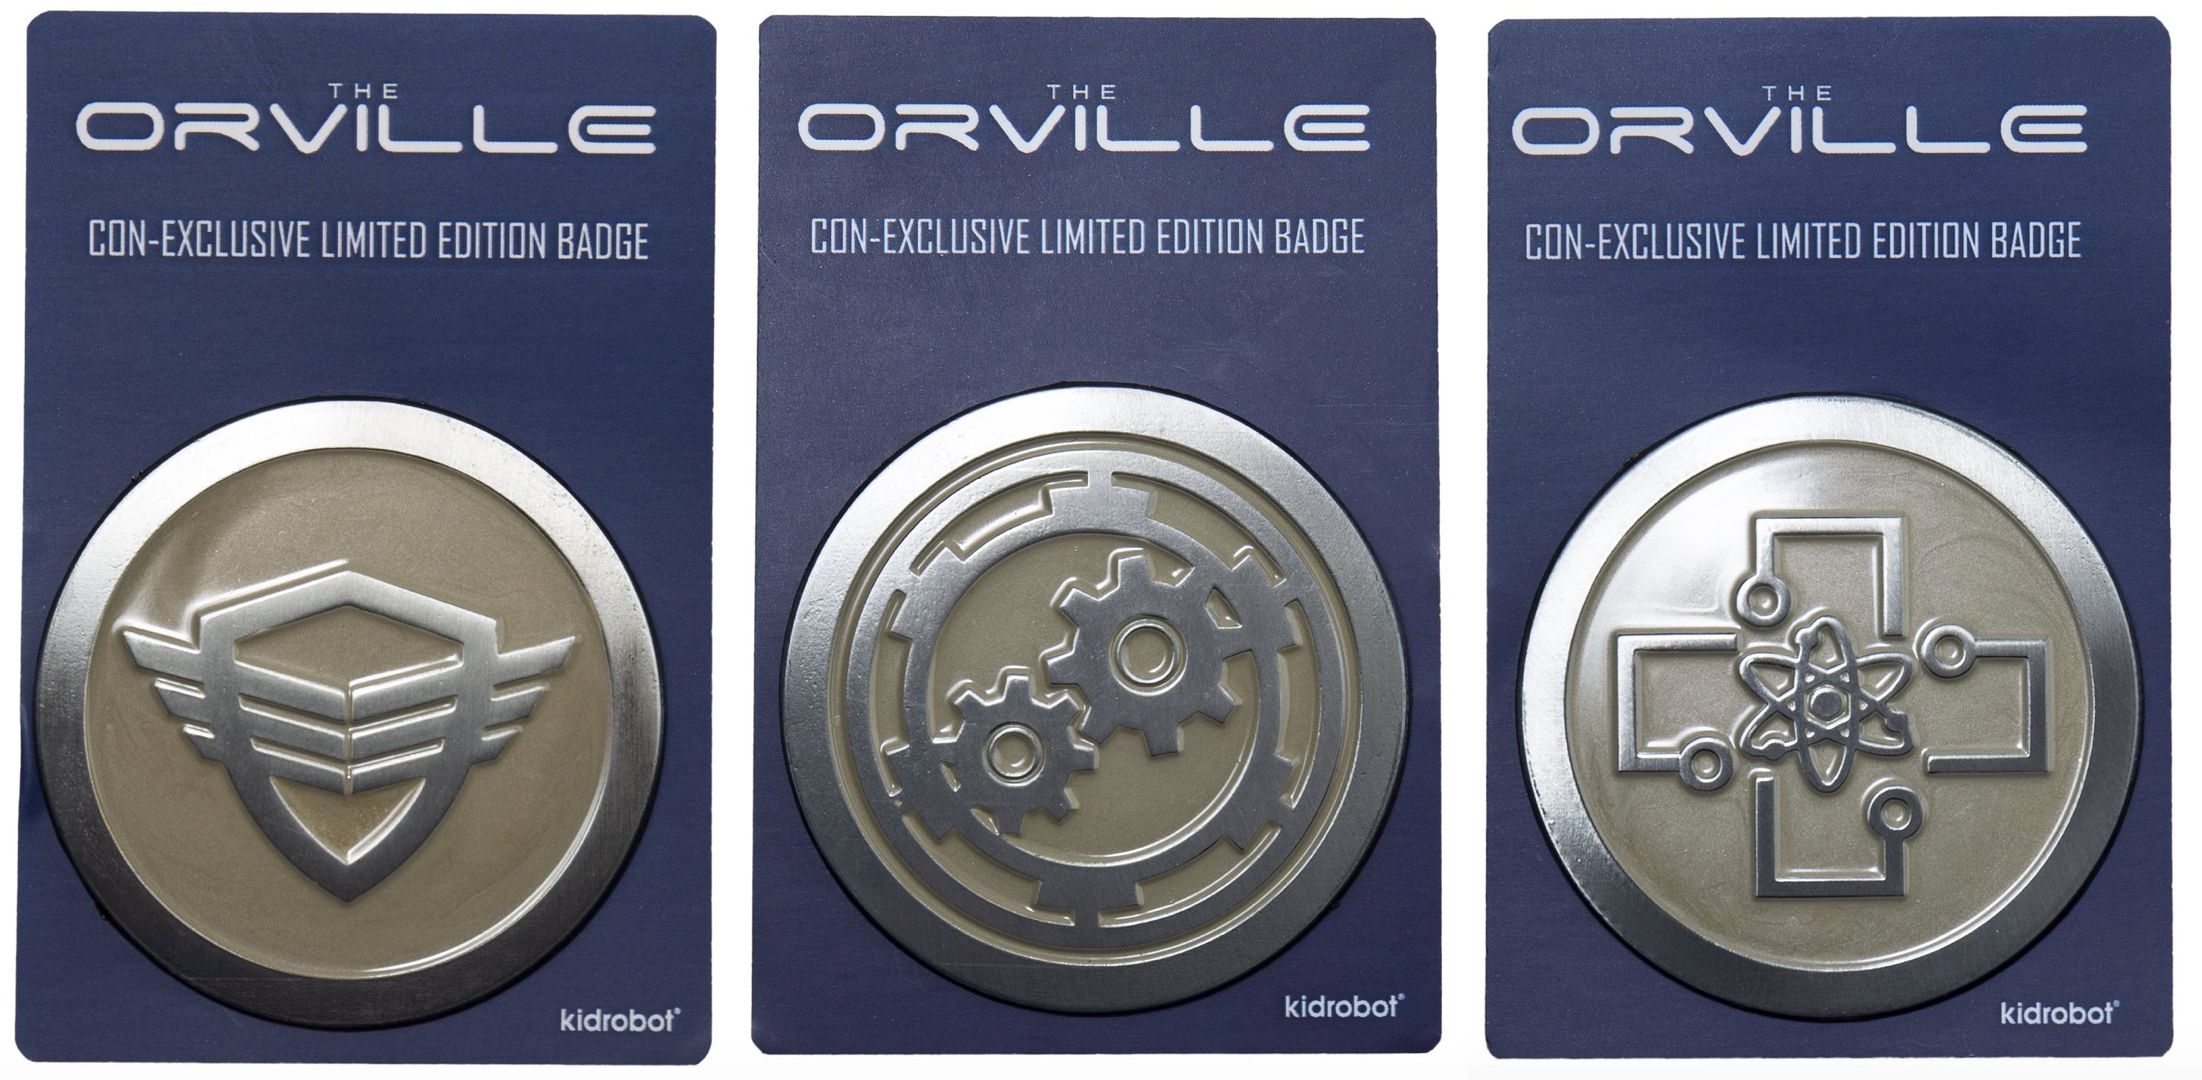 The Orville Badges Kidrobot